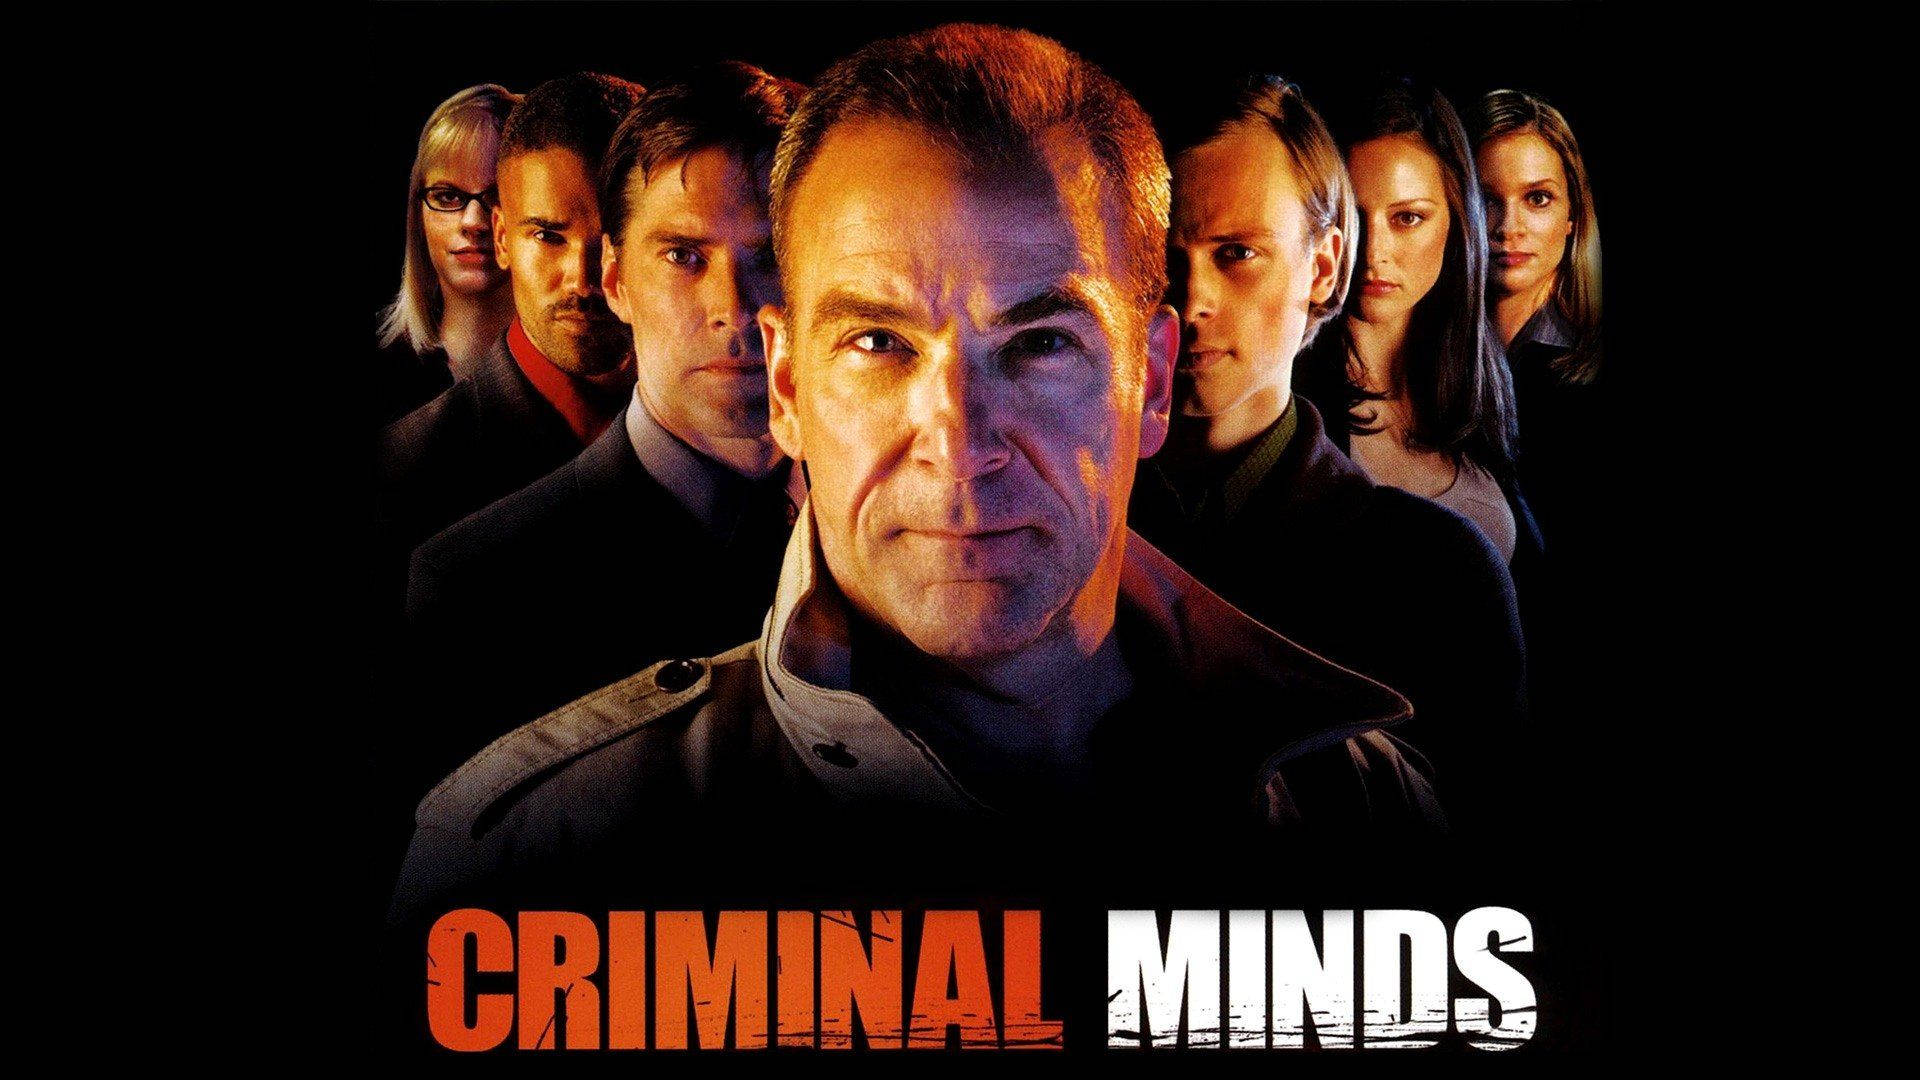 Criminal Minds Season 1 Poster Background